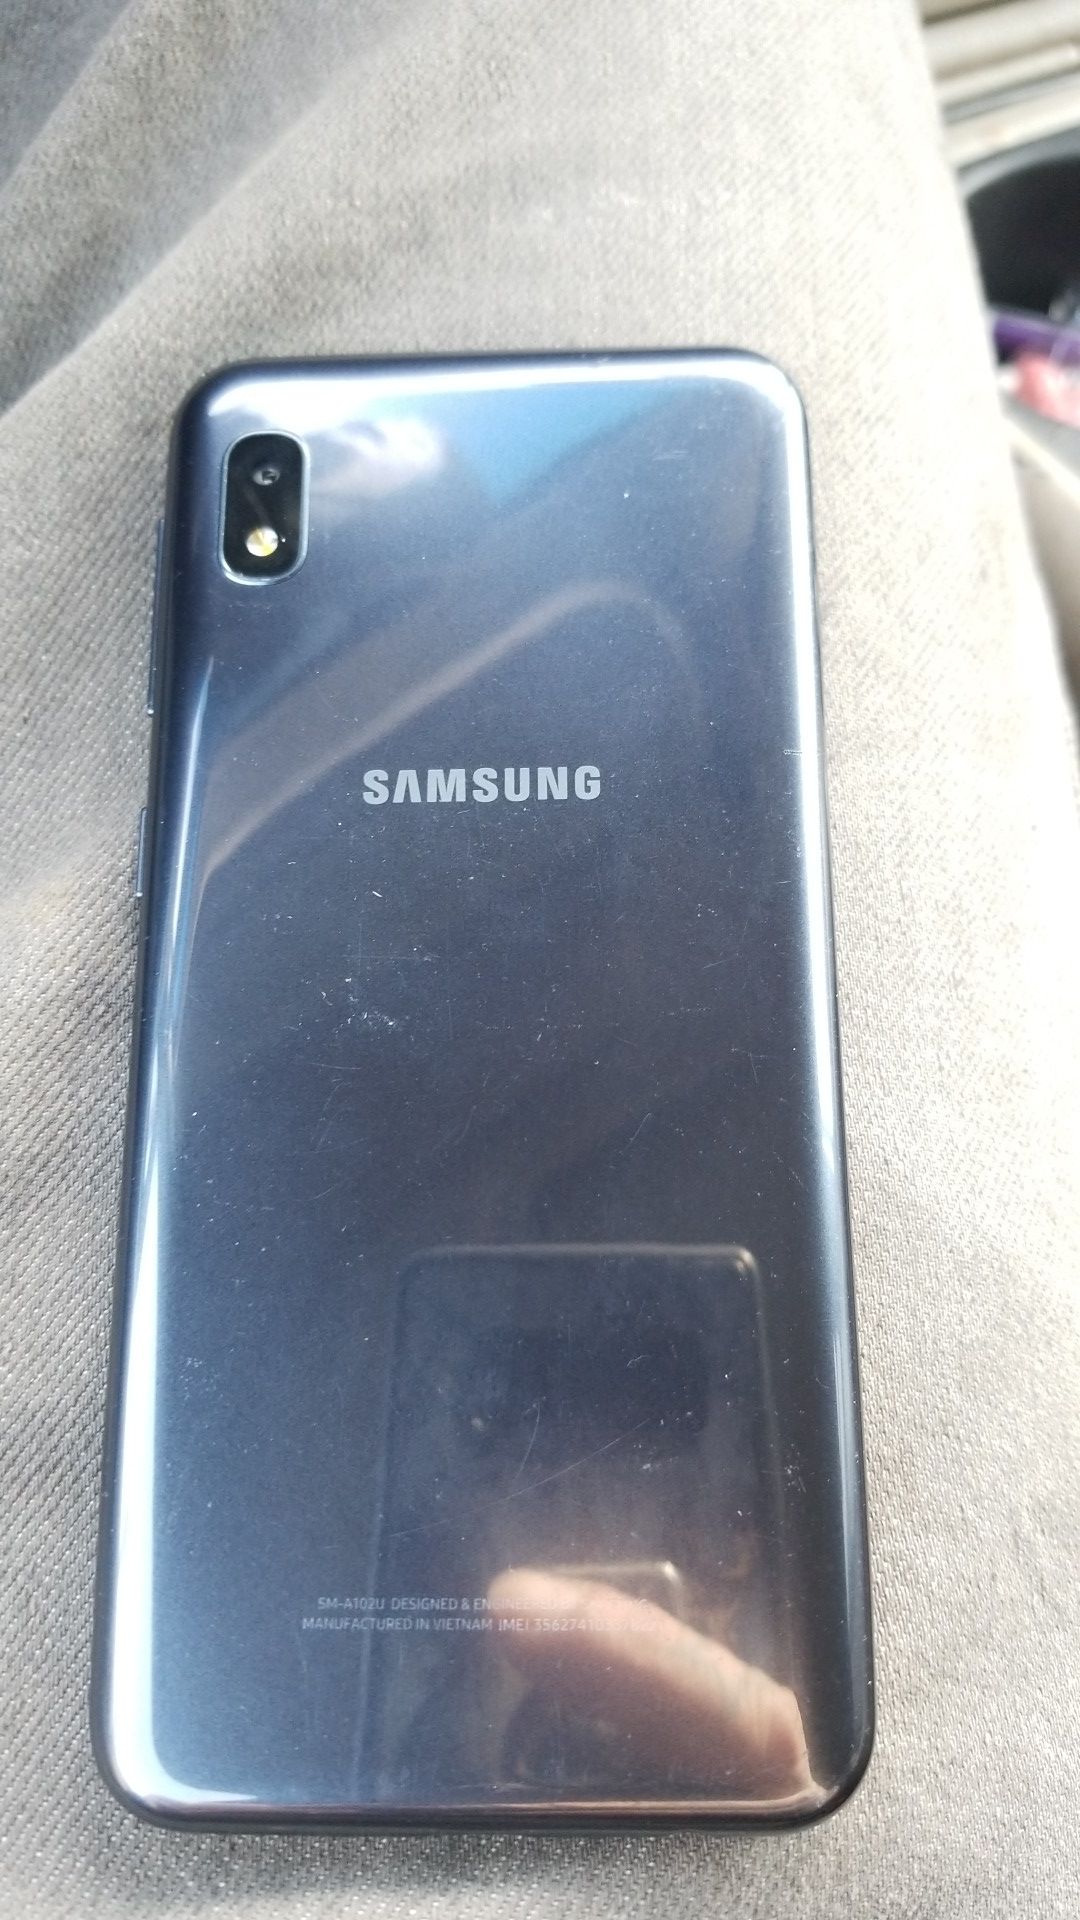 Samsung phone a